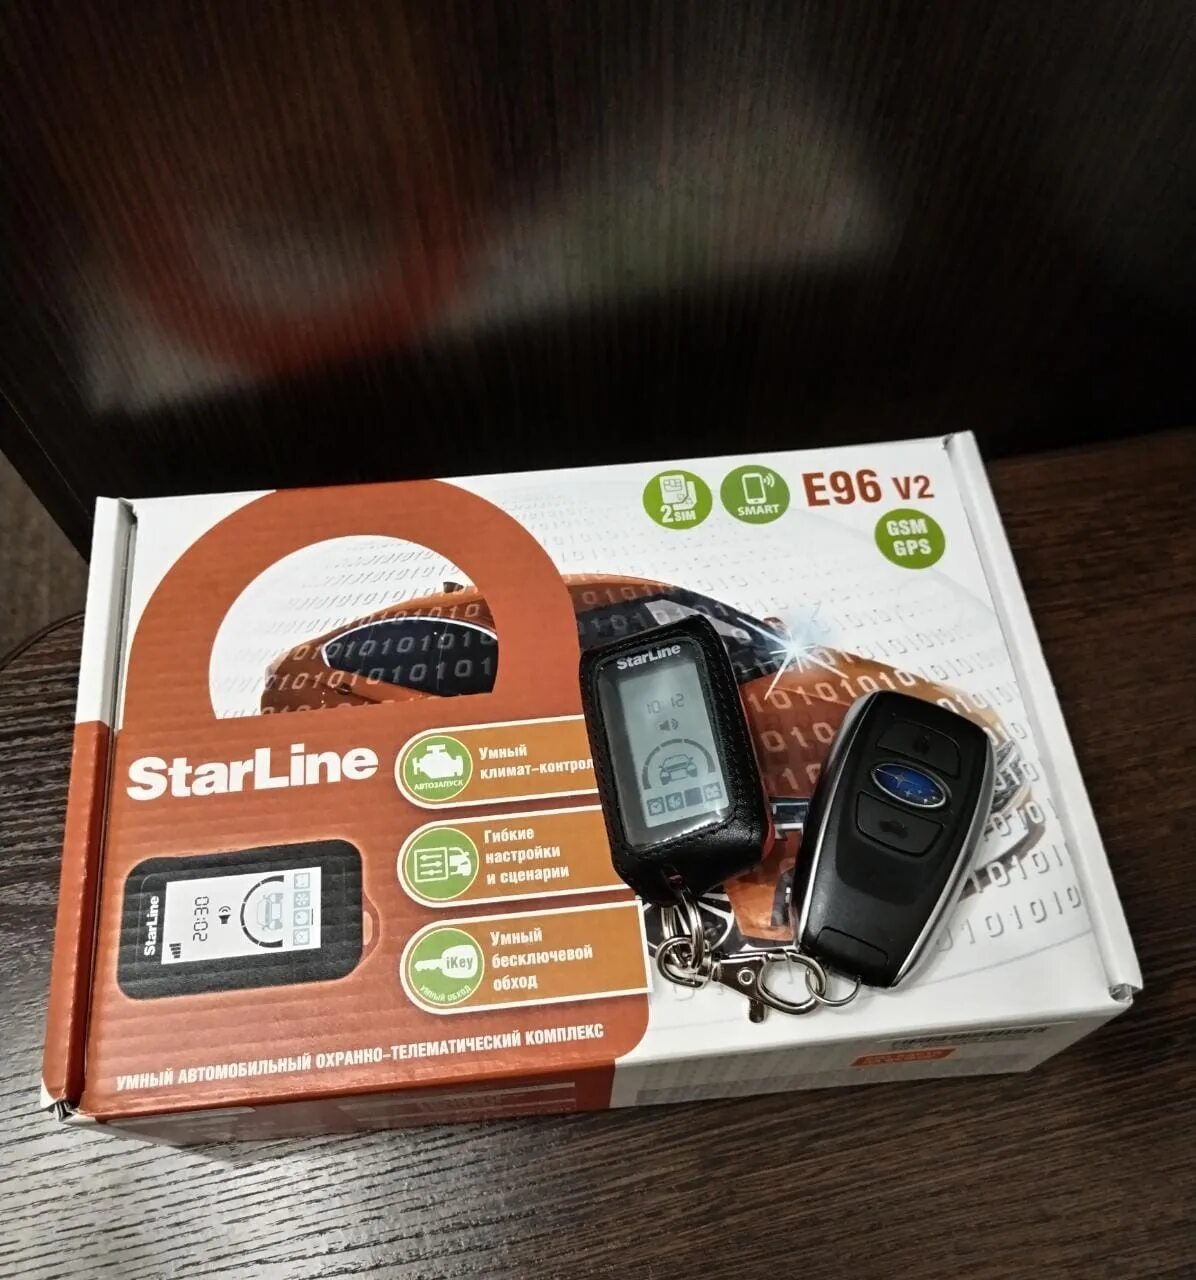 Starline e96 bt gsm. STARLINE e96 GSM GPS. Сигнализация с 2 брелоками и GSM. E96. GPS сегодня.